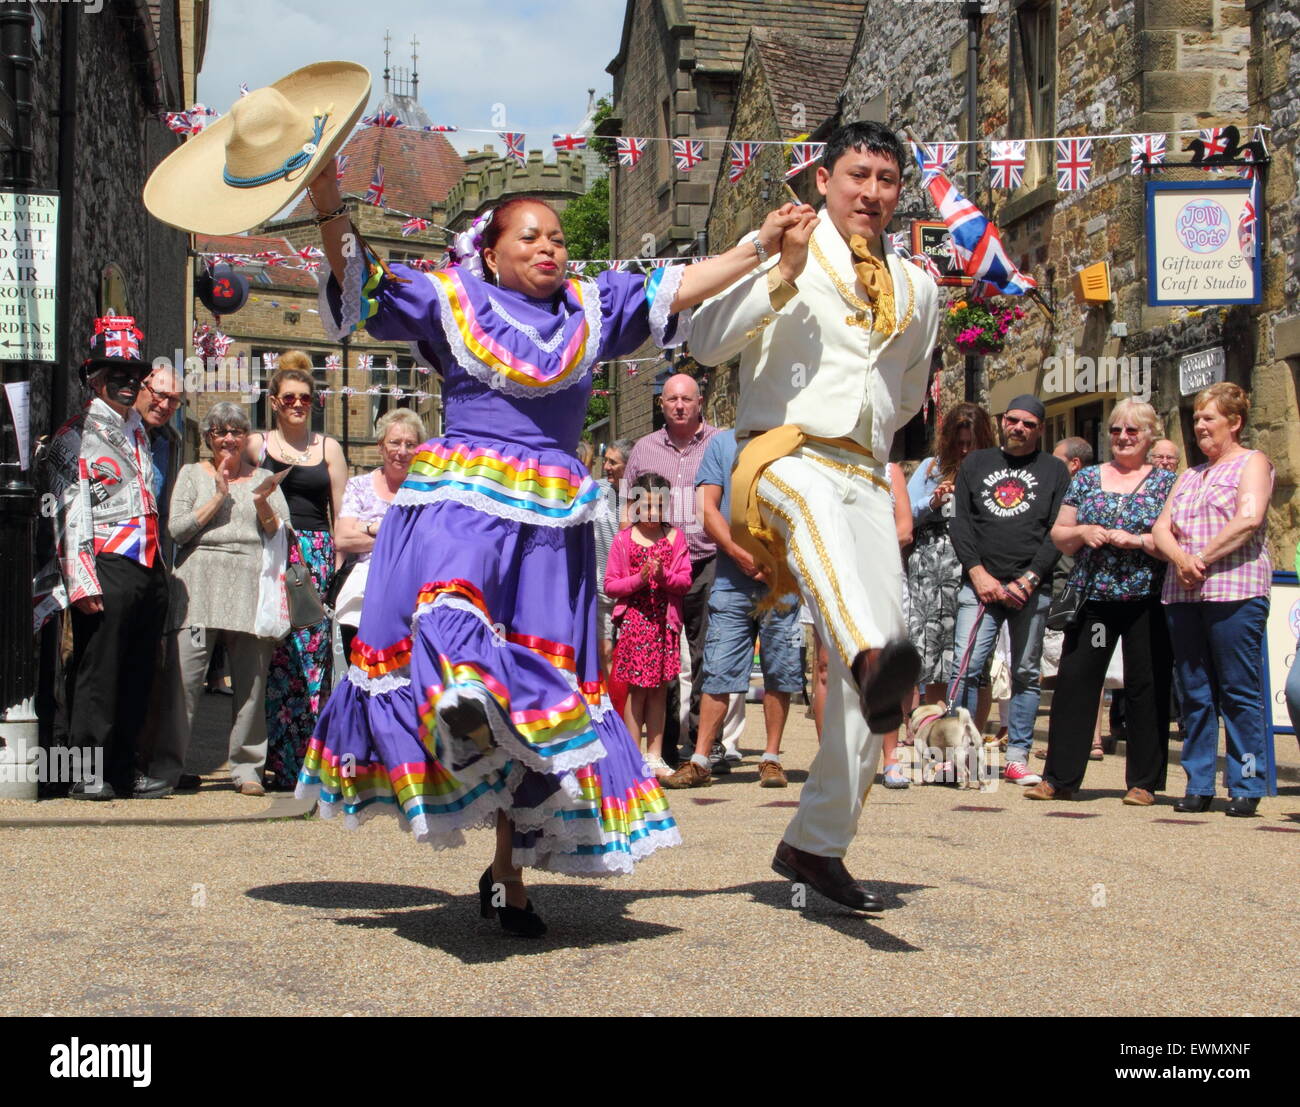 Mmbers de fils de America, un groupe de danse latino-américaine d'effectuer en plein air sur la Journée internationale de la danse de Bakewell Bakewell, UK Banque D'Images